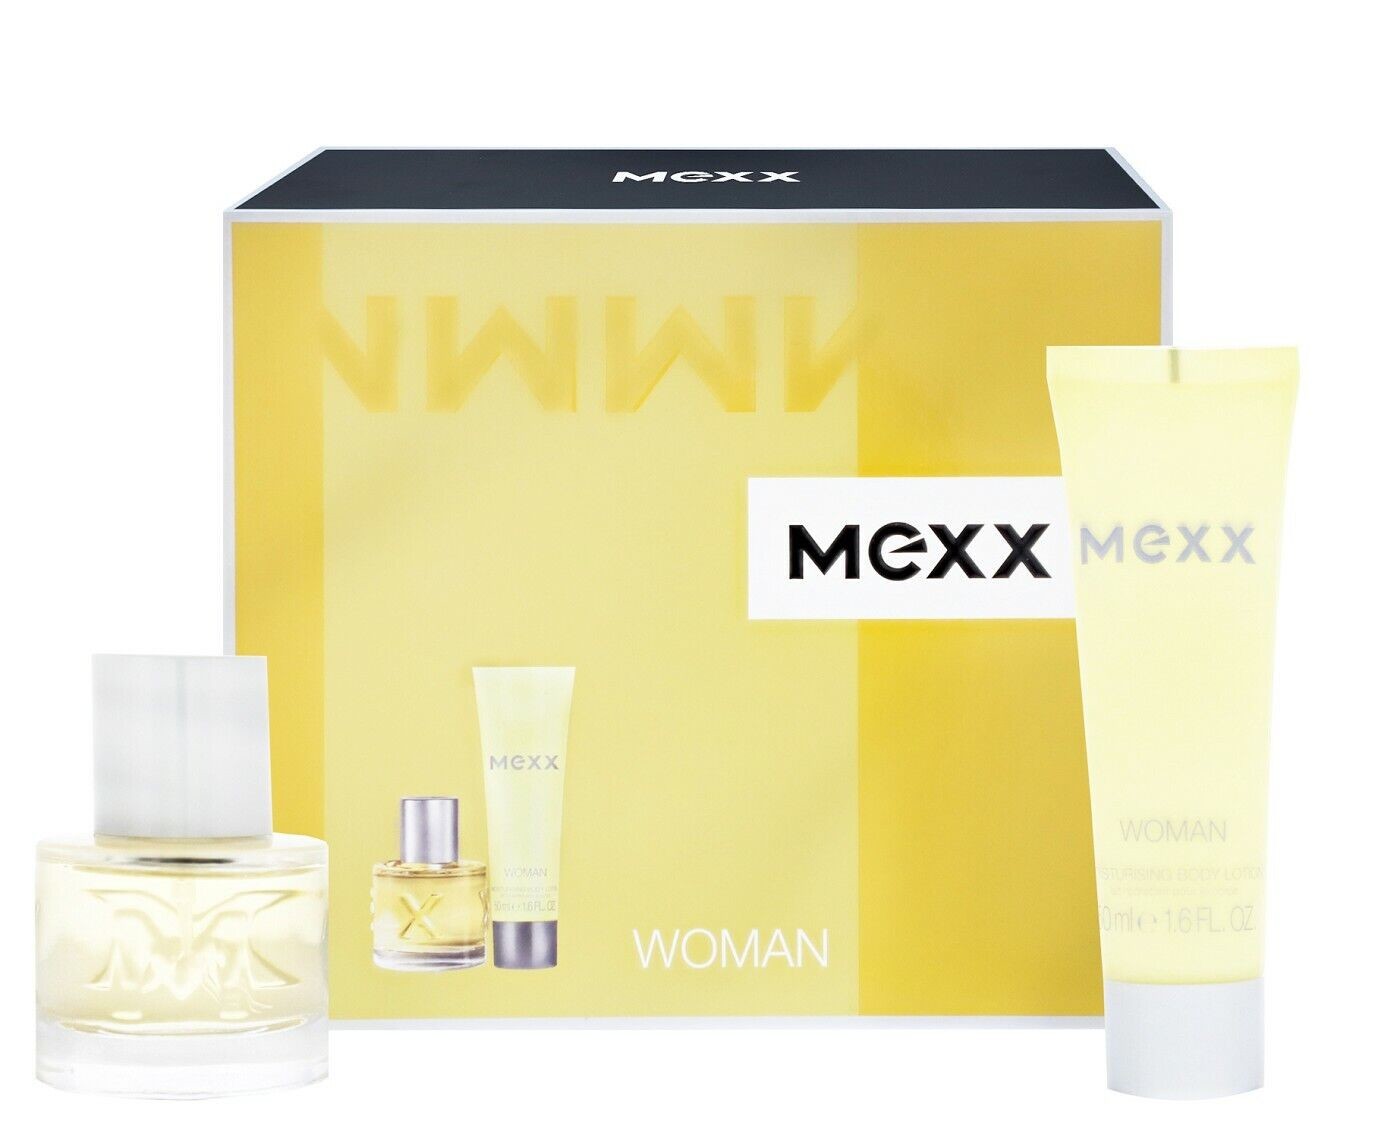 Mexx WOMAN Body Lotion 50ml und EdT 20ml Geschenkset für Frauen